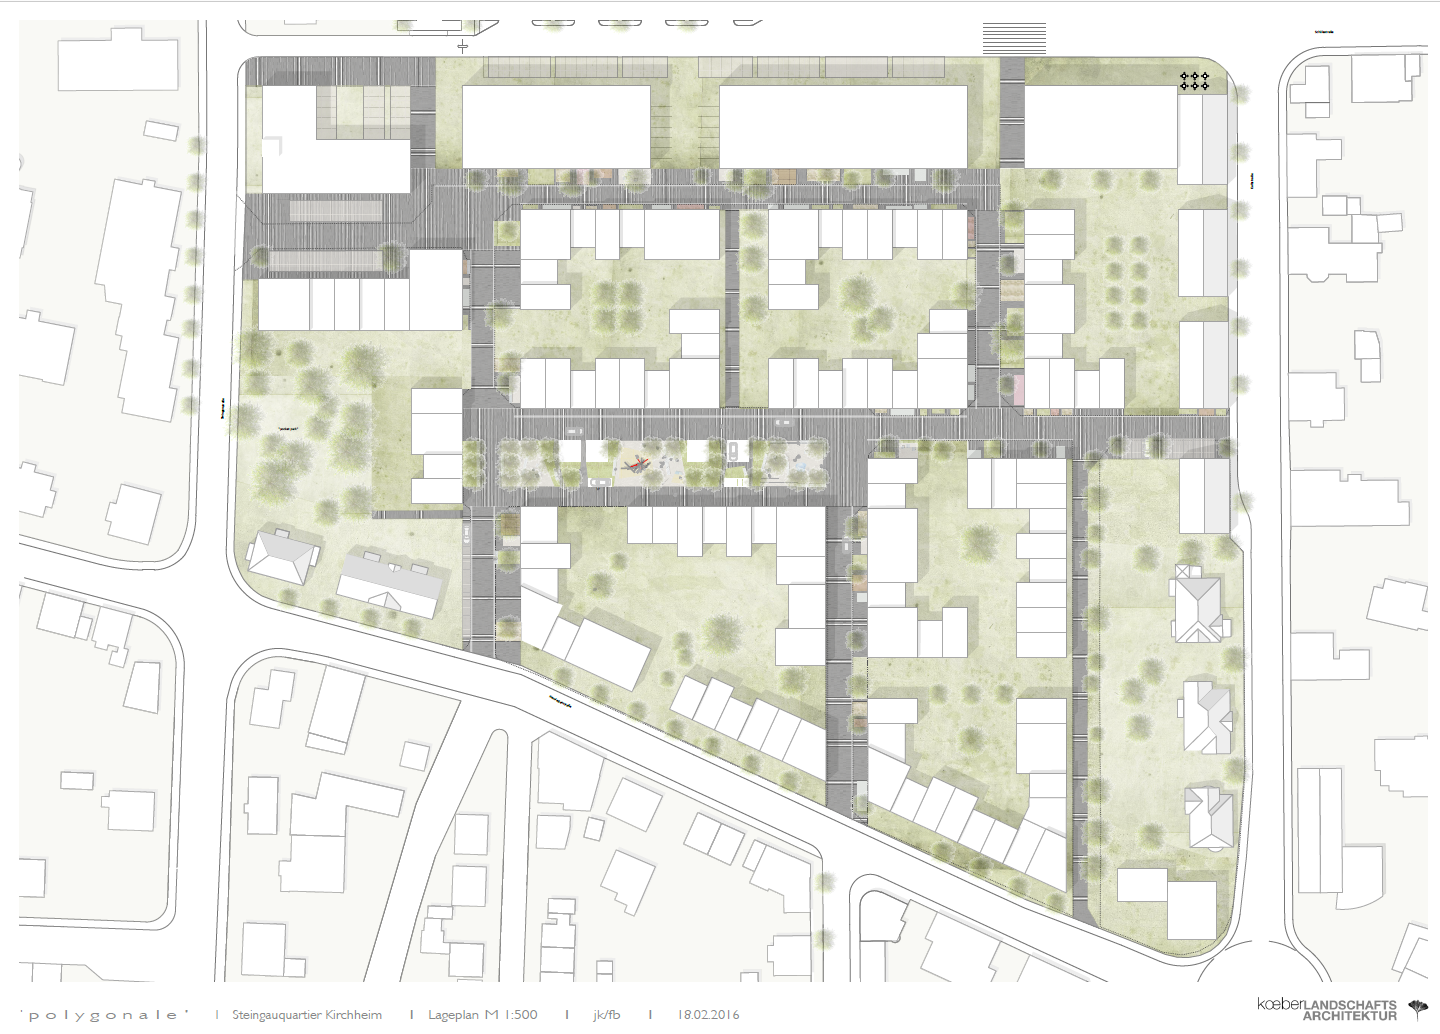 Die Abbildung zeigt einen Plan mit Straßen, Flächen und Gebäuden für das Steingauquartier in Kirchheim unter Teck.